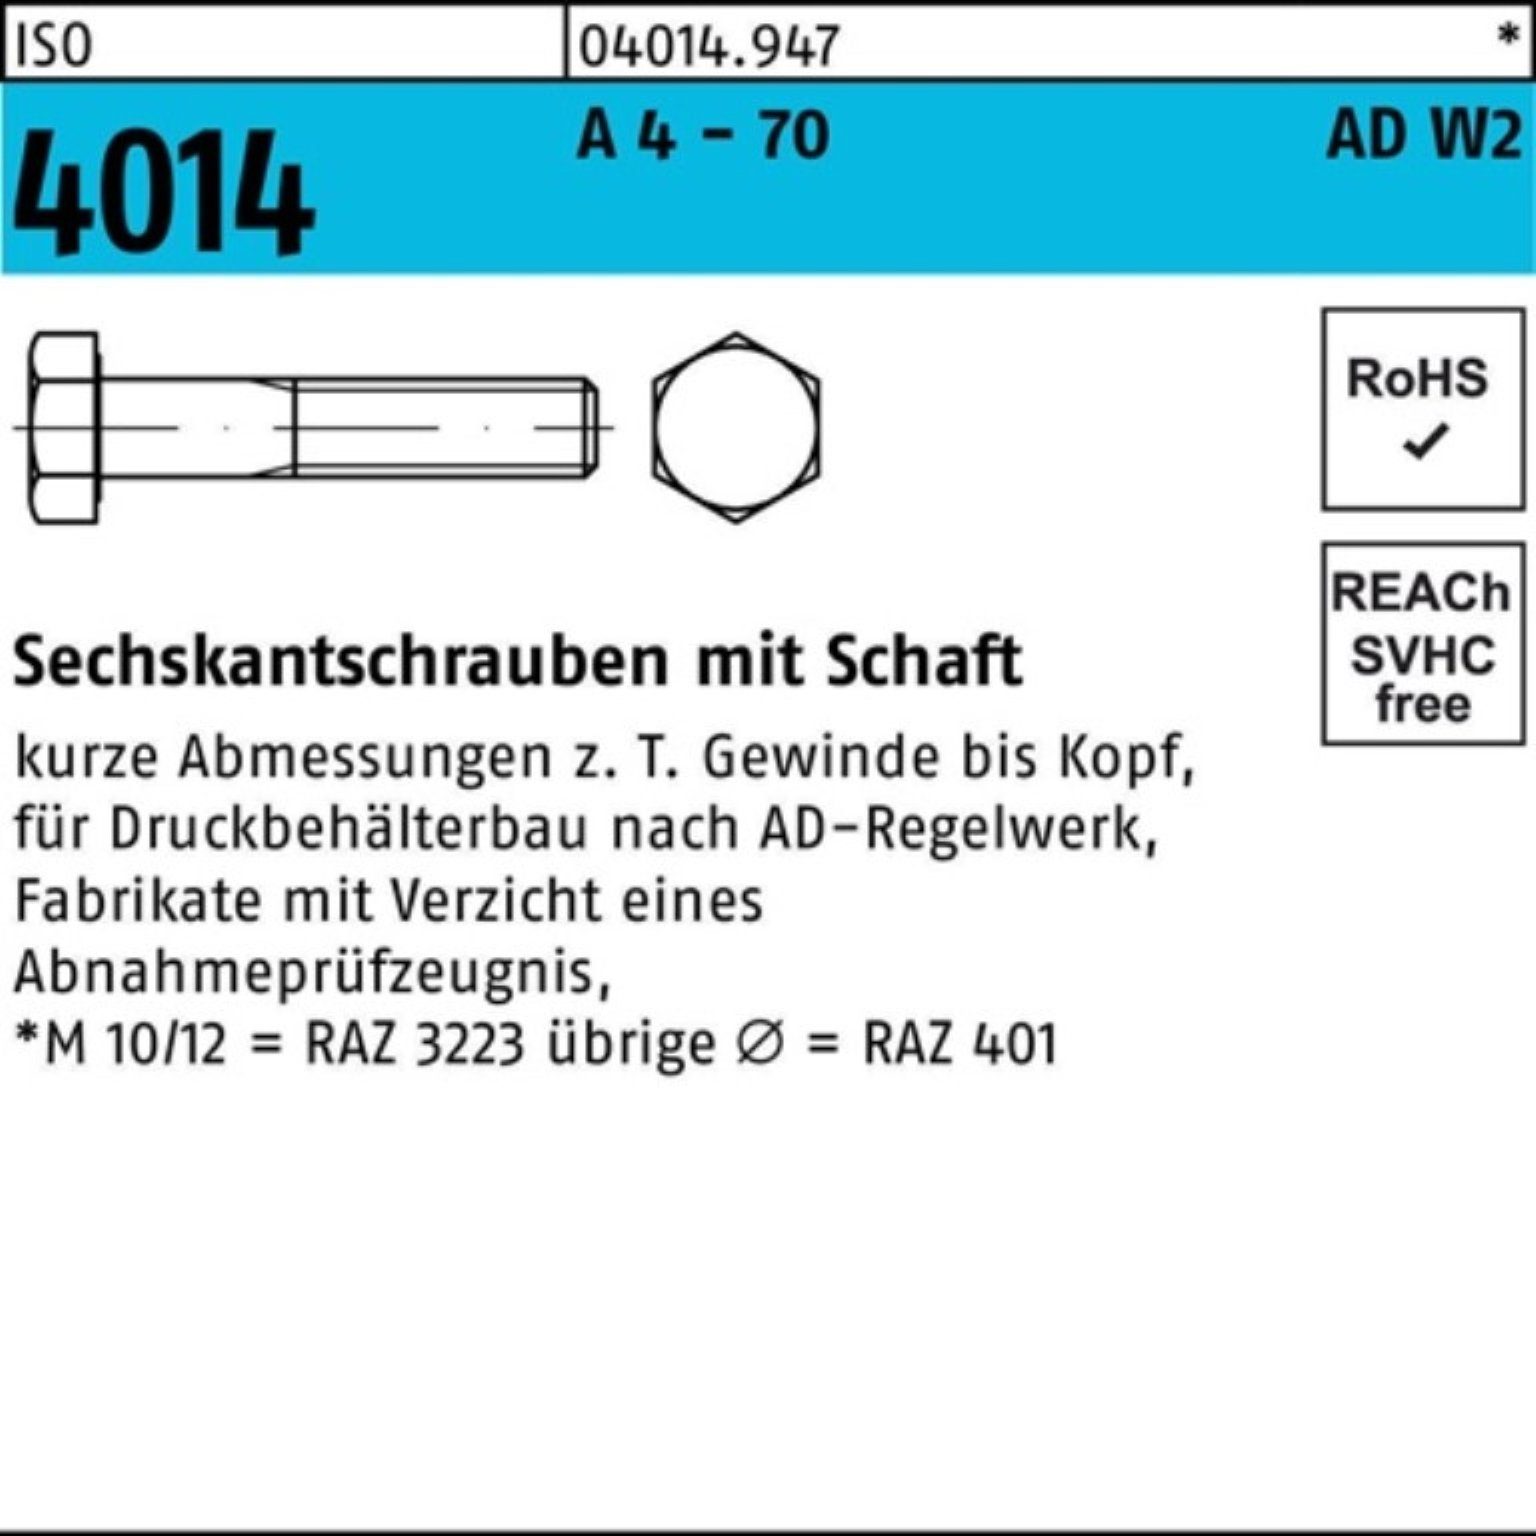 Bufab Sechskantschraube 100er Pack Sechskantschraube ISO 4014 Schaft M10x 120 A 4 - 70 AD-W2 5